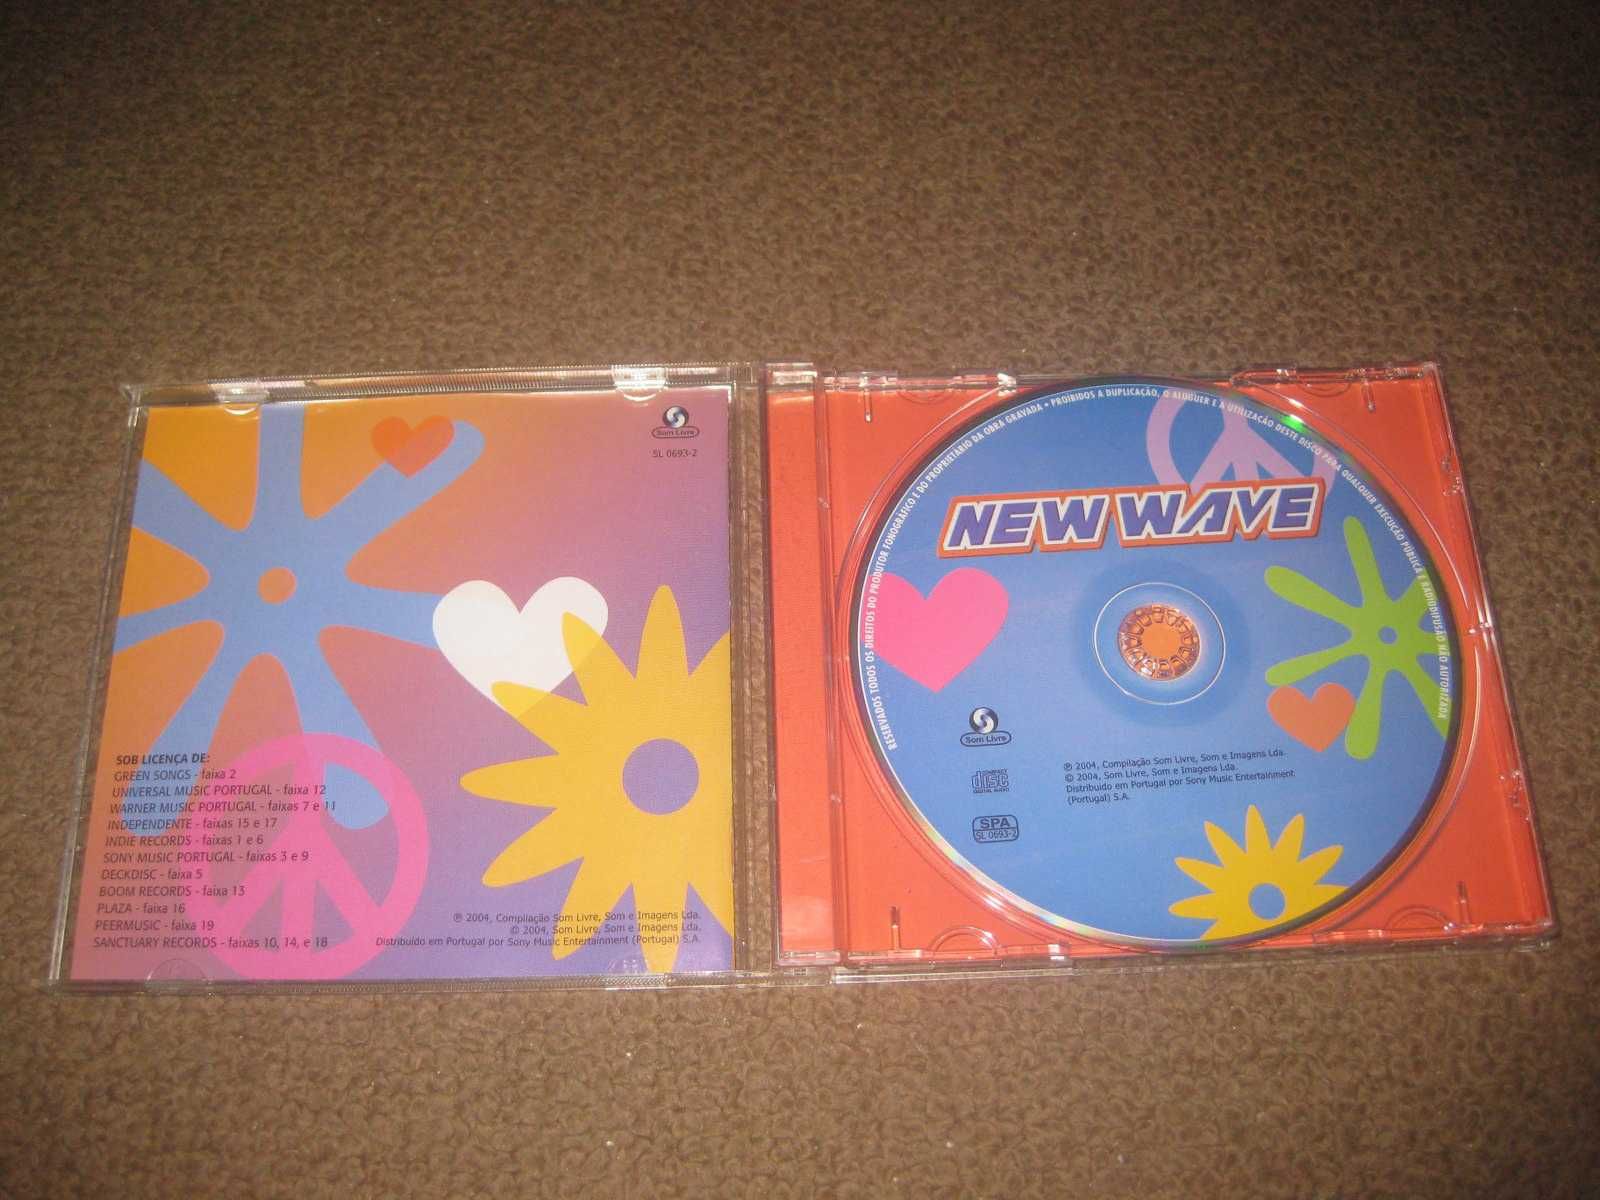 CD da New Wave/Portes Grátis!